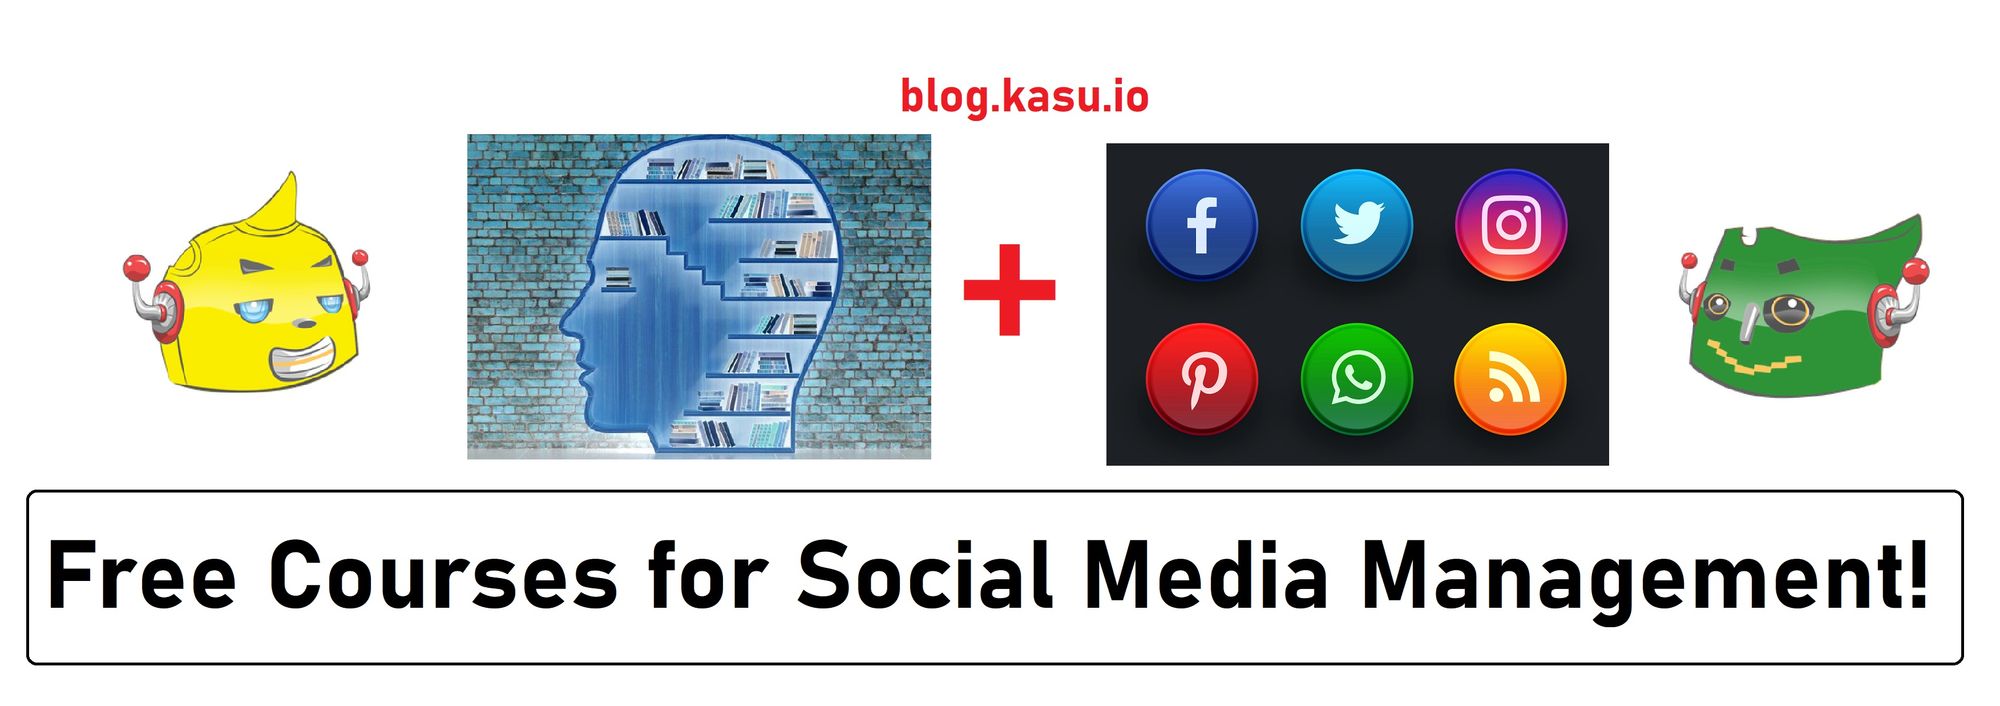 Free Social Media Marketing Courses!